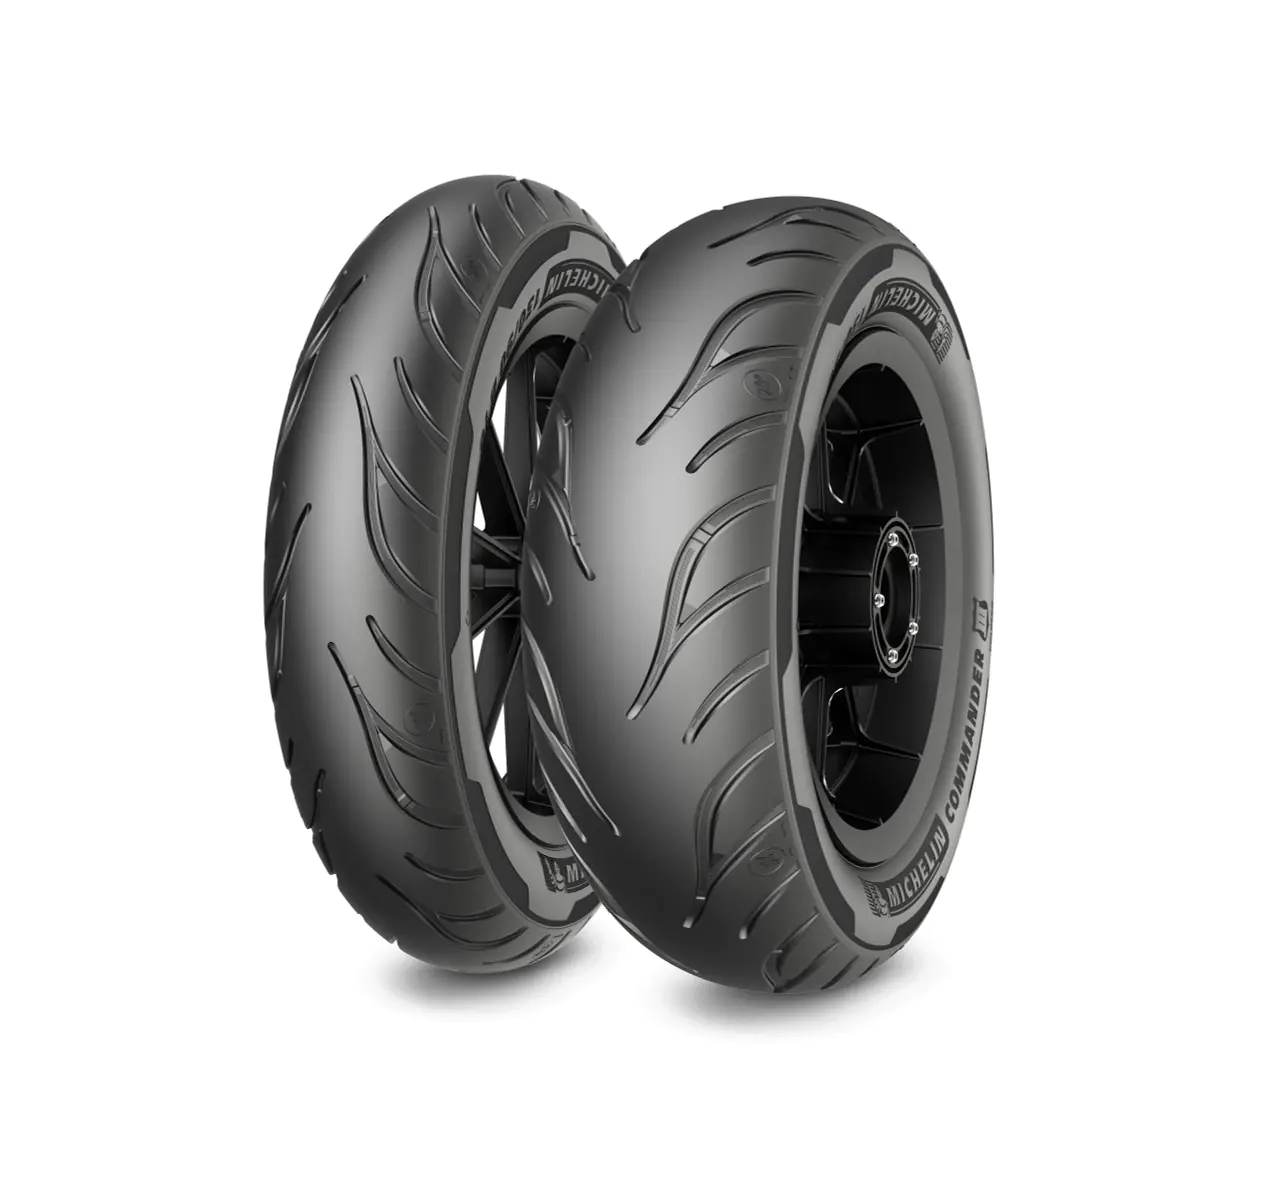 Michelin Michelin 140/90-16 77H COMMANDER 3 CRUISE pneumatici nuovi Estivo 